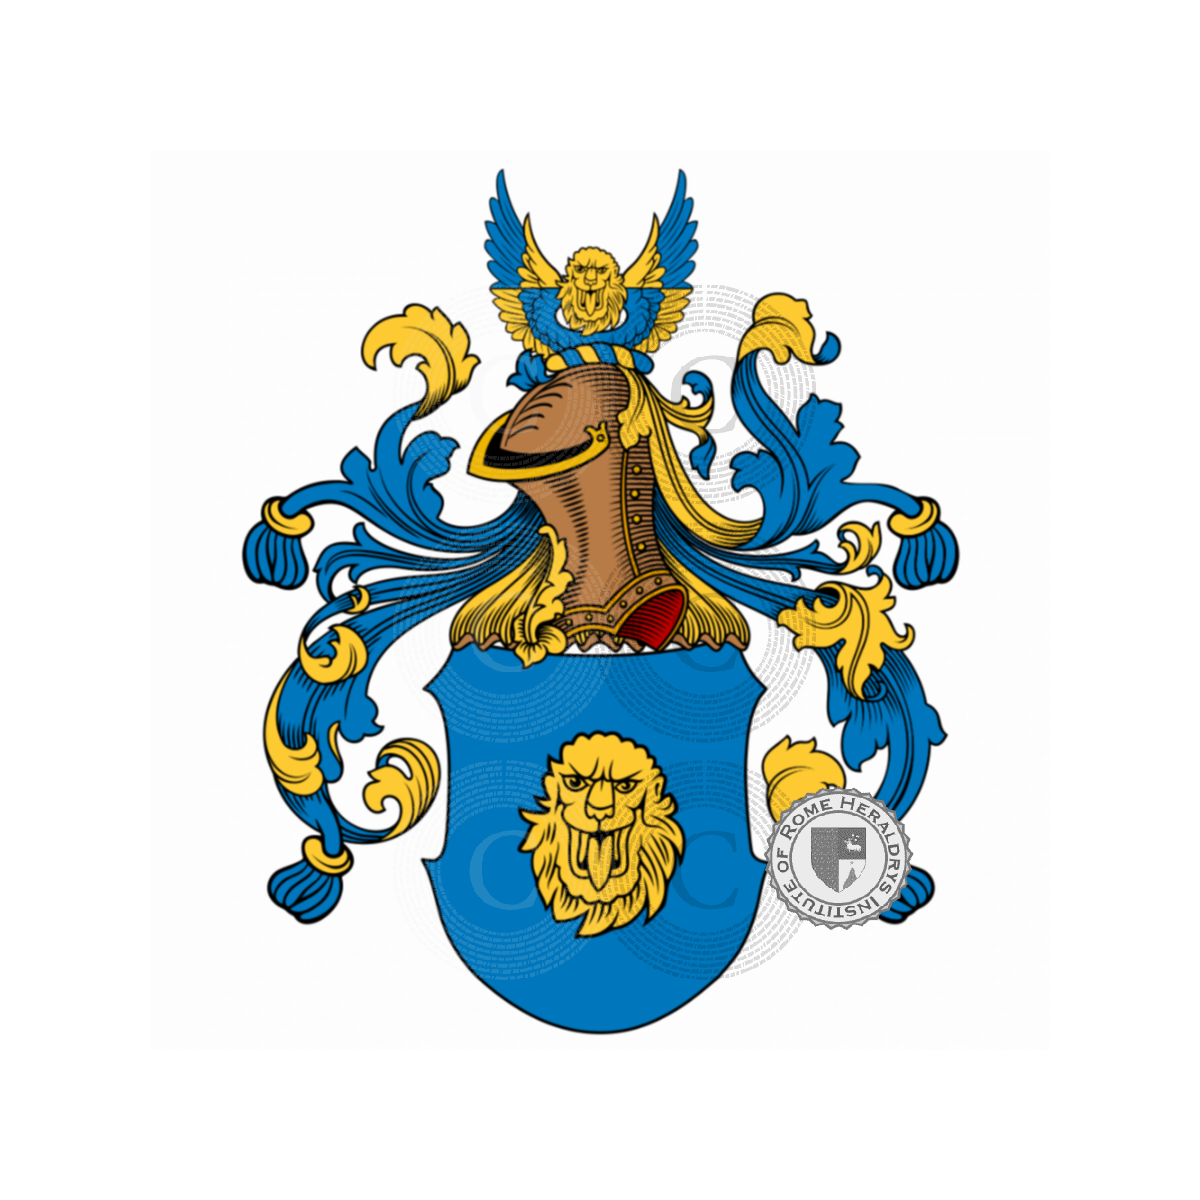 Wappen der FamilieSchnabel, Schnabell,Schnaberich,Schnavell,Schneeberg,Snavel